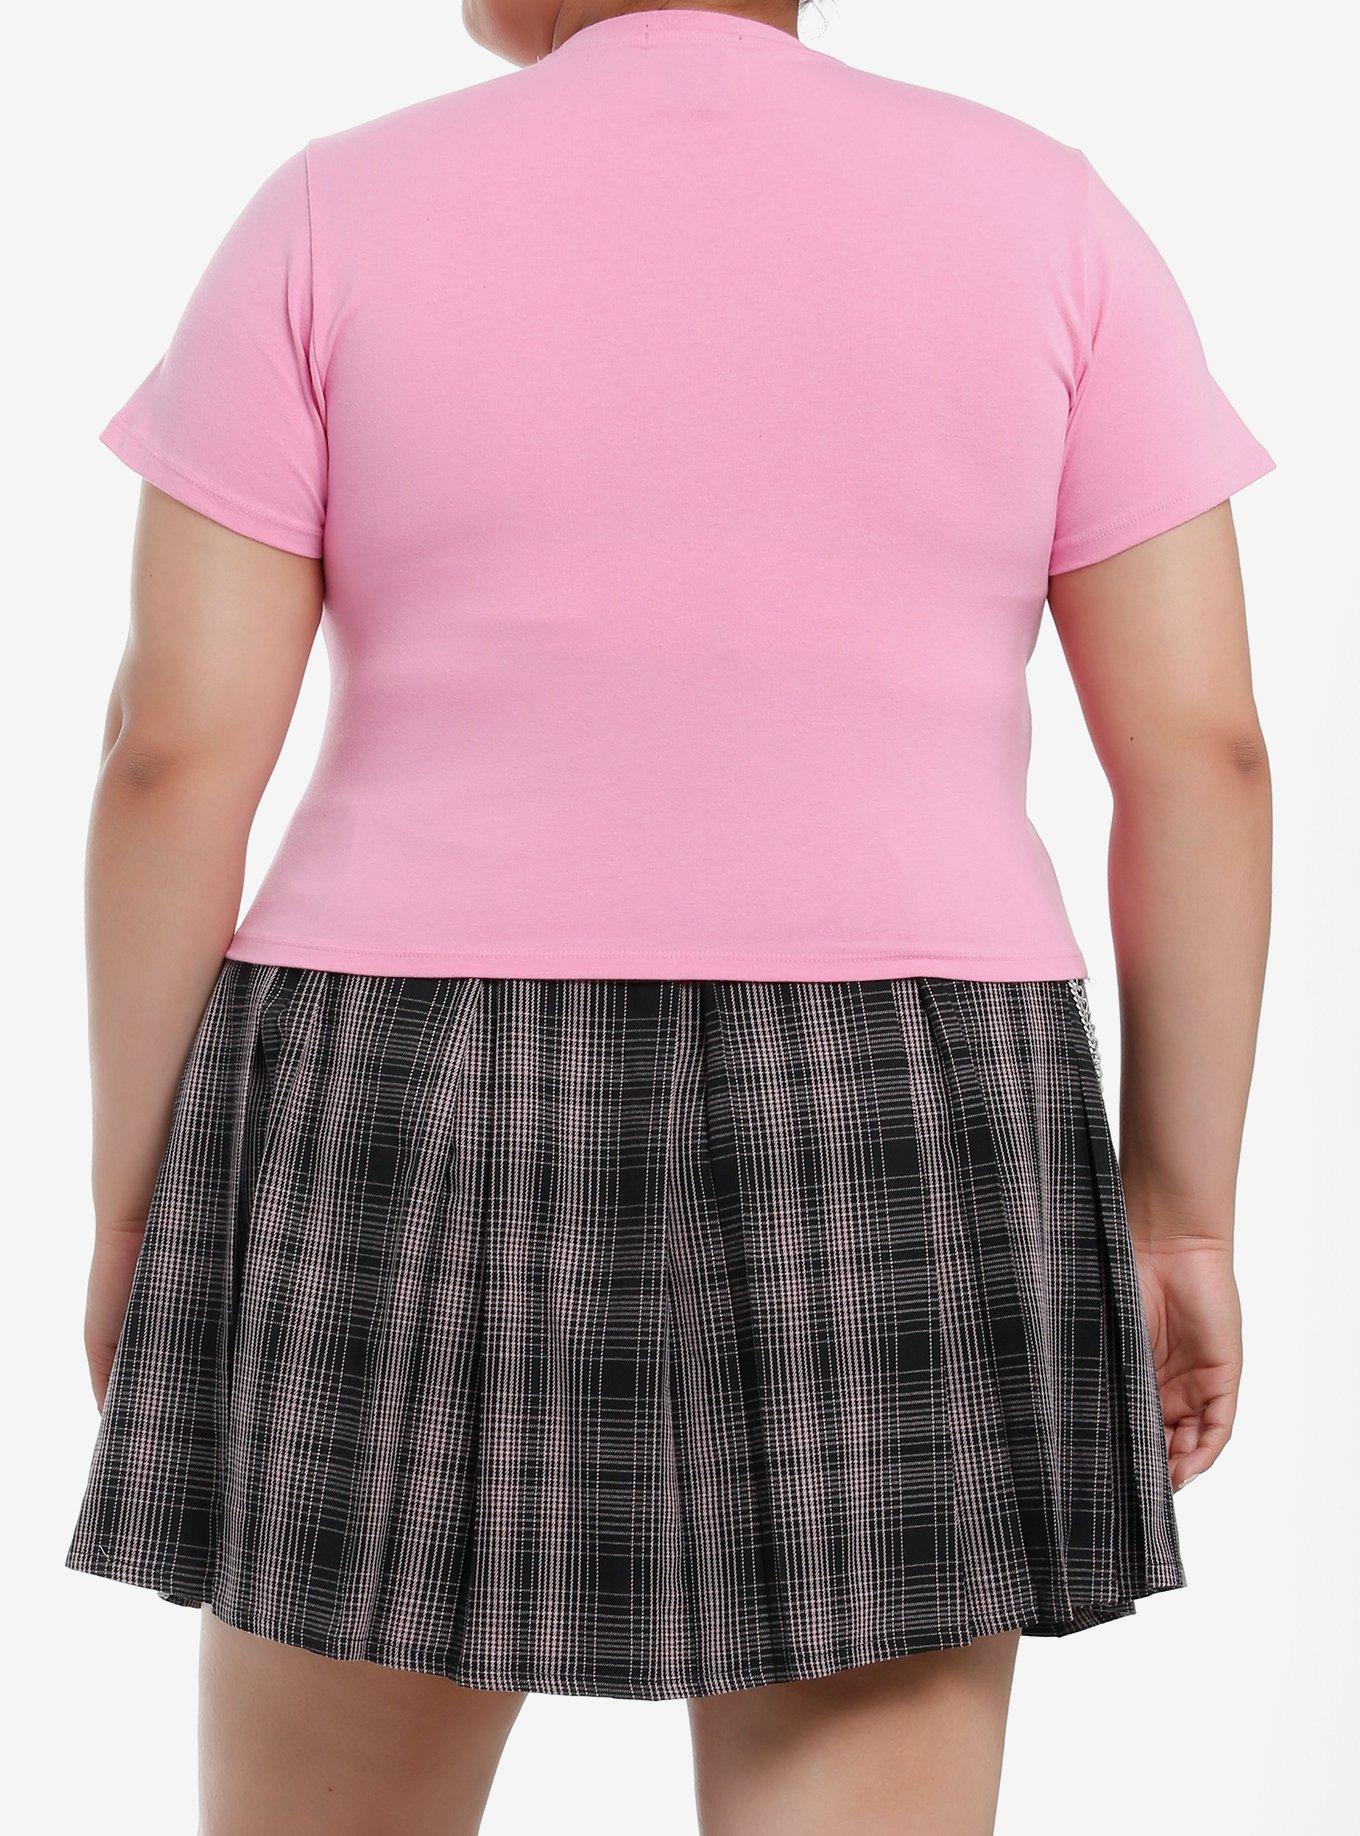 Sweet Society Roaring Tiger Pink Girls Baby T-Shirt Plus Size, PINK, alternate